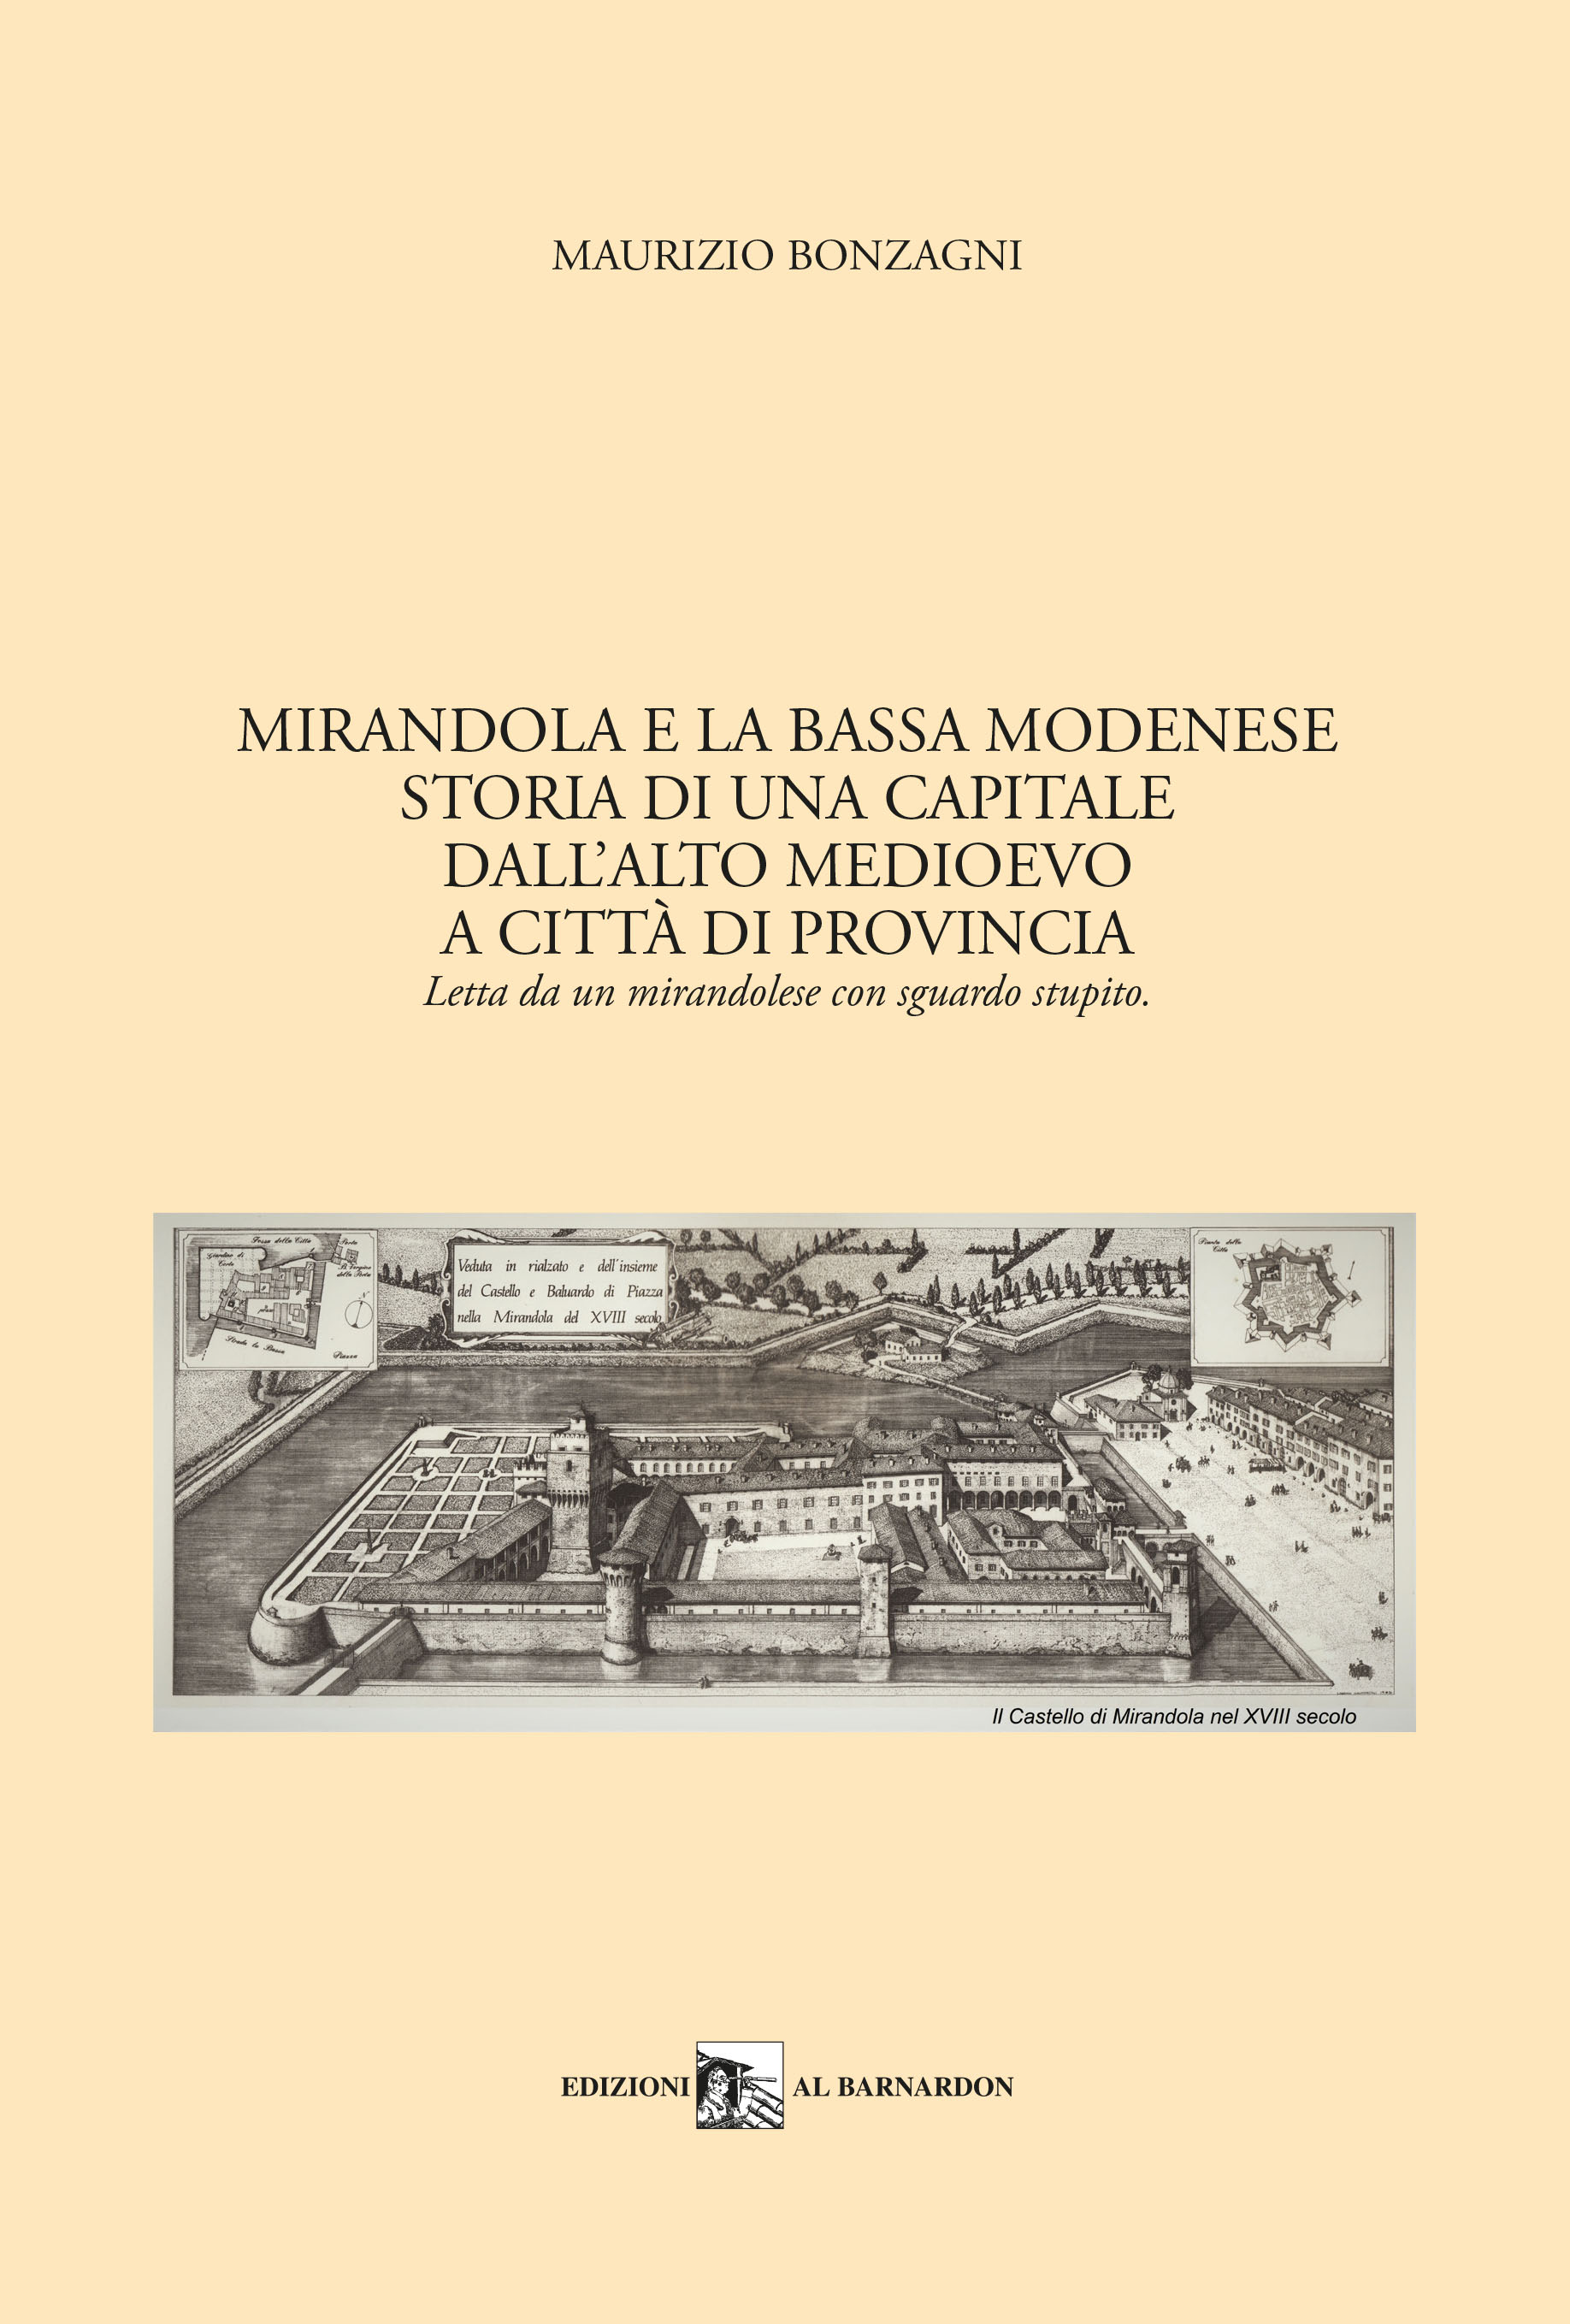 COVER_Mirandola e la bassa modenese (1)